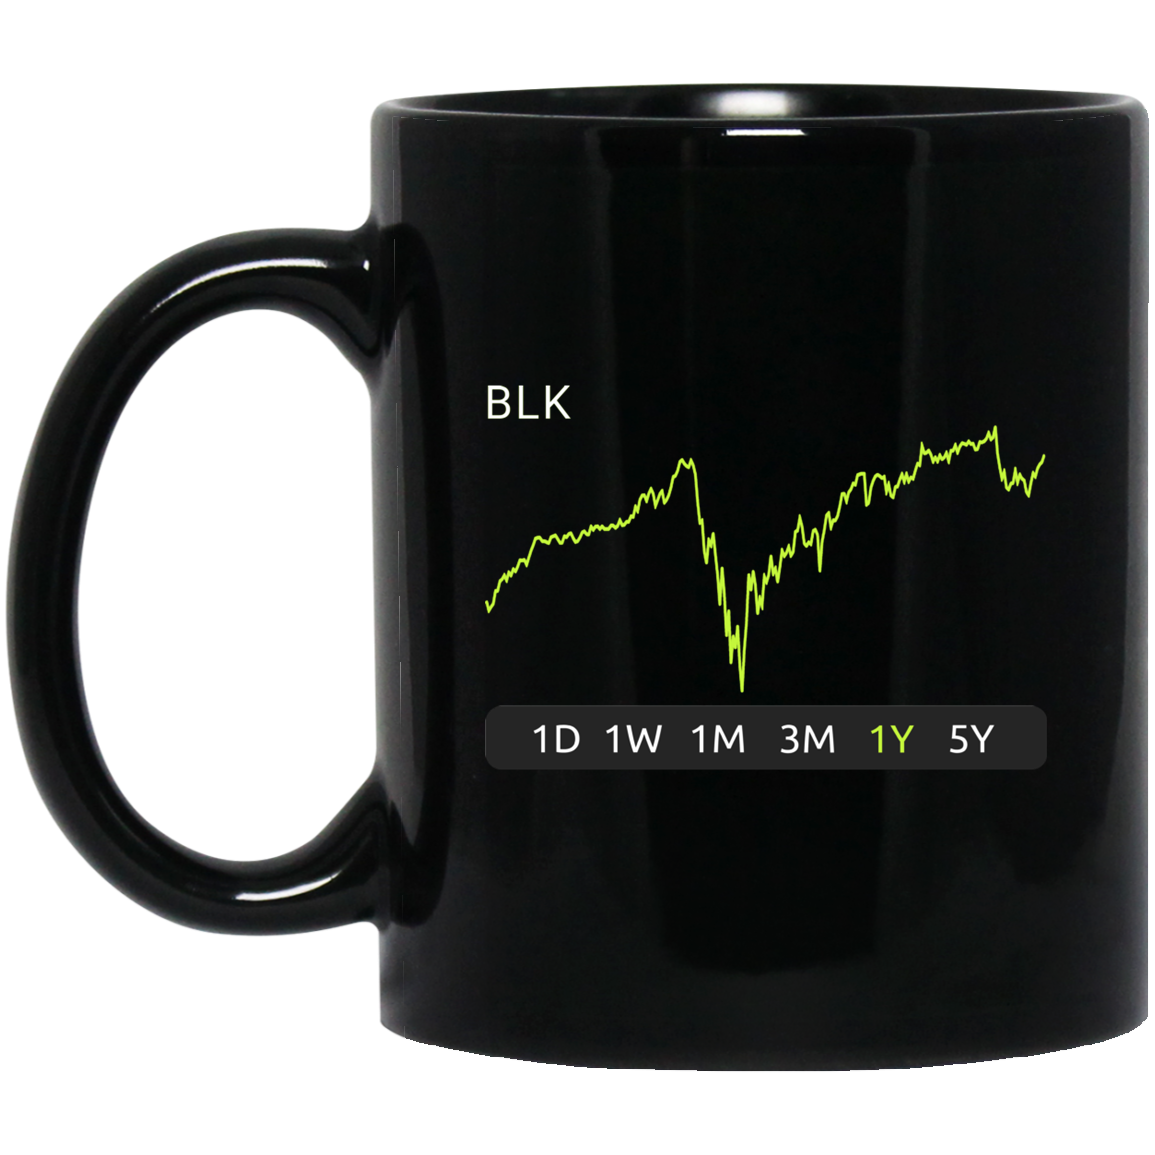 BLK Stock 1y Mug